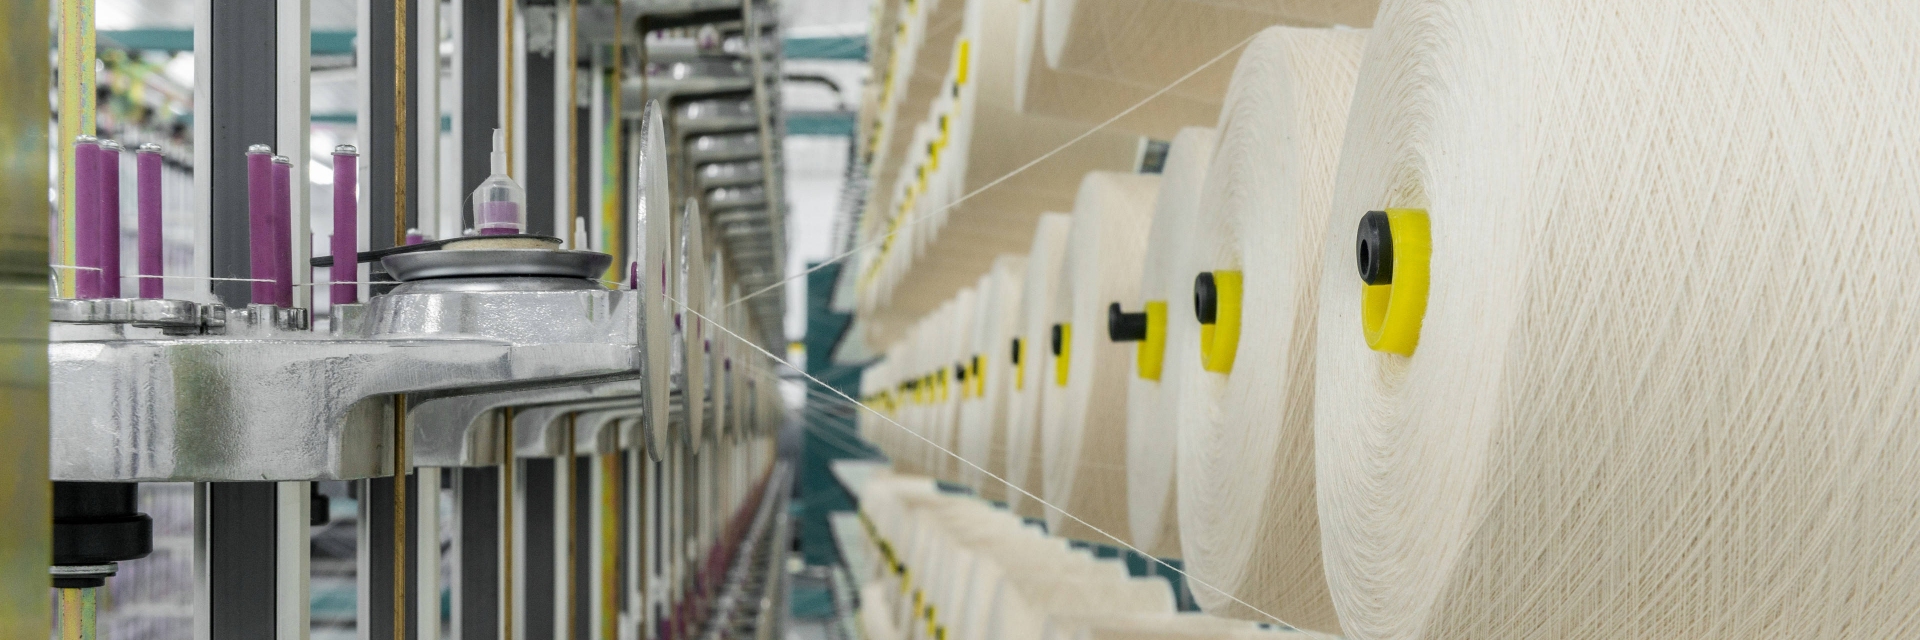 A indústria têxtil no Brasil é um dos setores mais tradicionais e importantes da economia, 
destacando-se por sua diversidade e capacidade de adaptação às tendências globais.